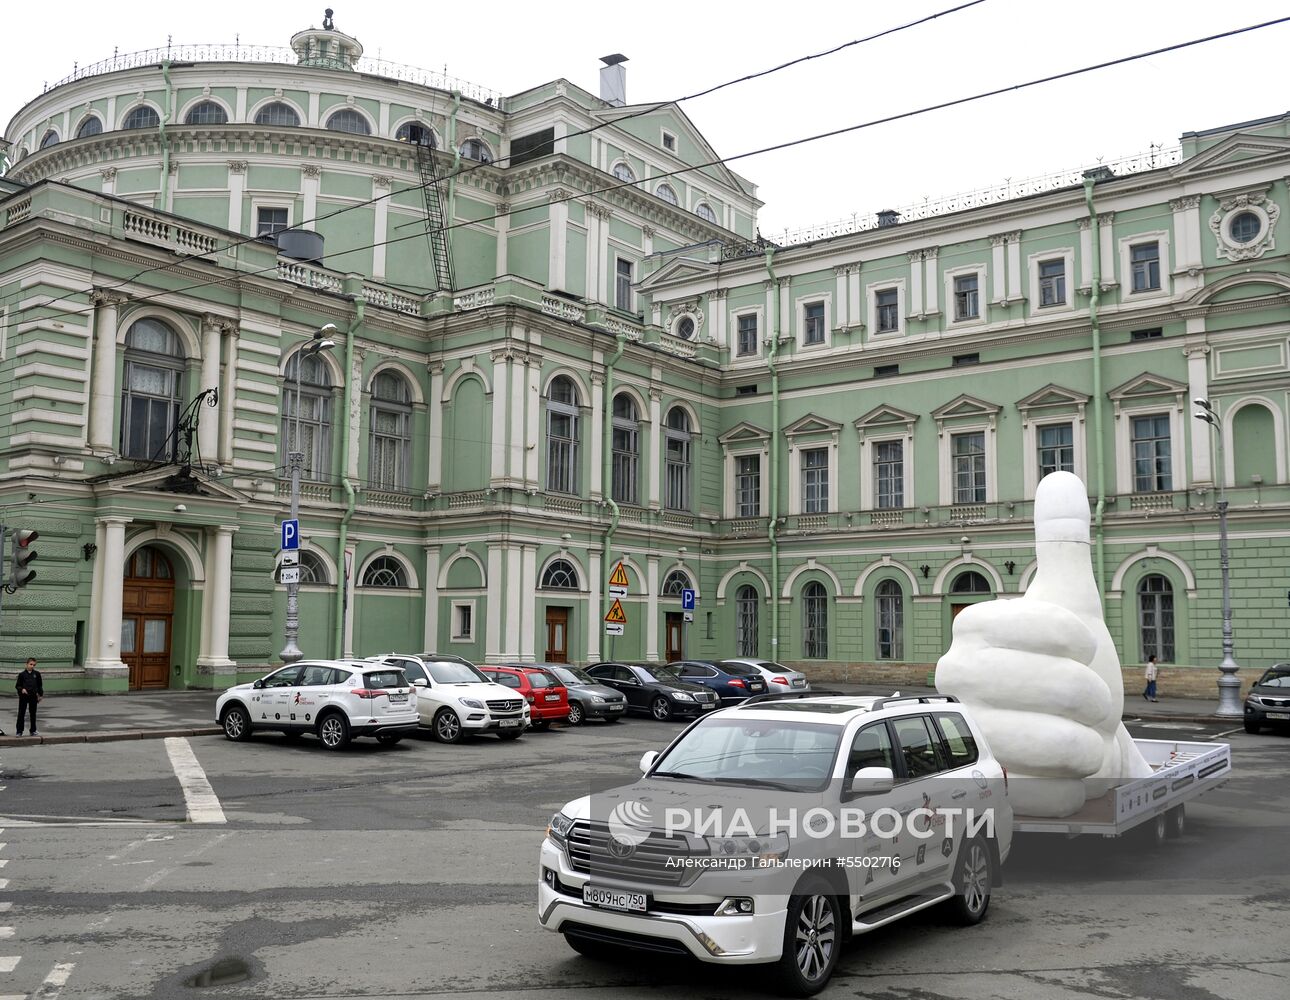 Гигантская фигура "Лайк" в Санкт-Петербурге